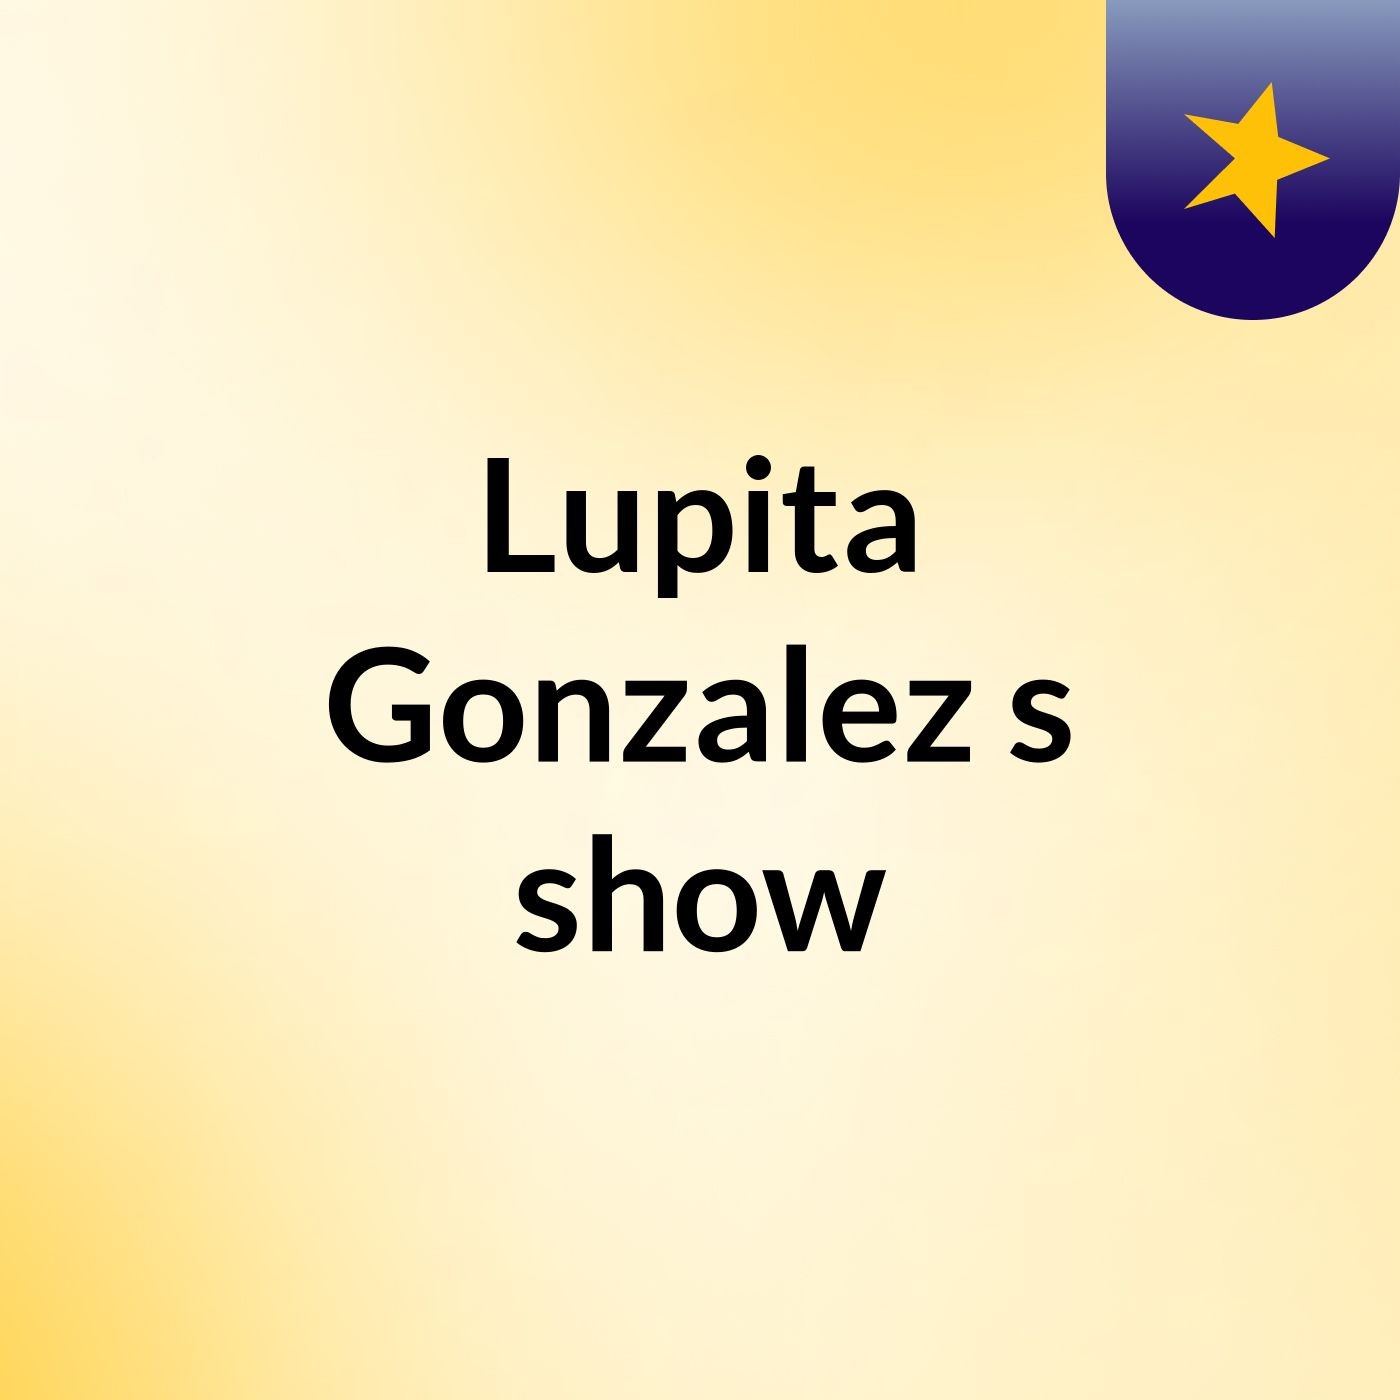 Lupita Gonzalez's show